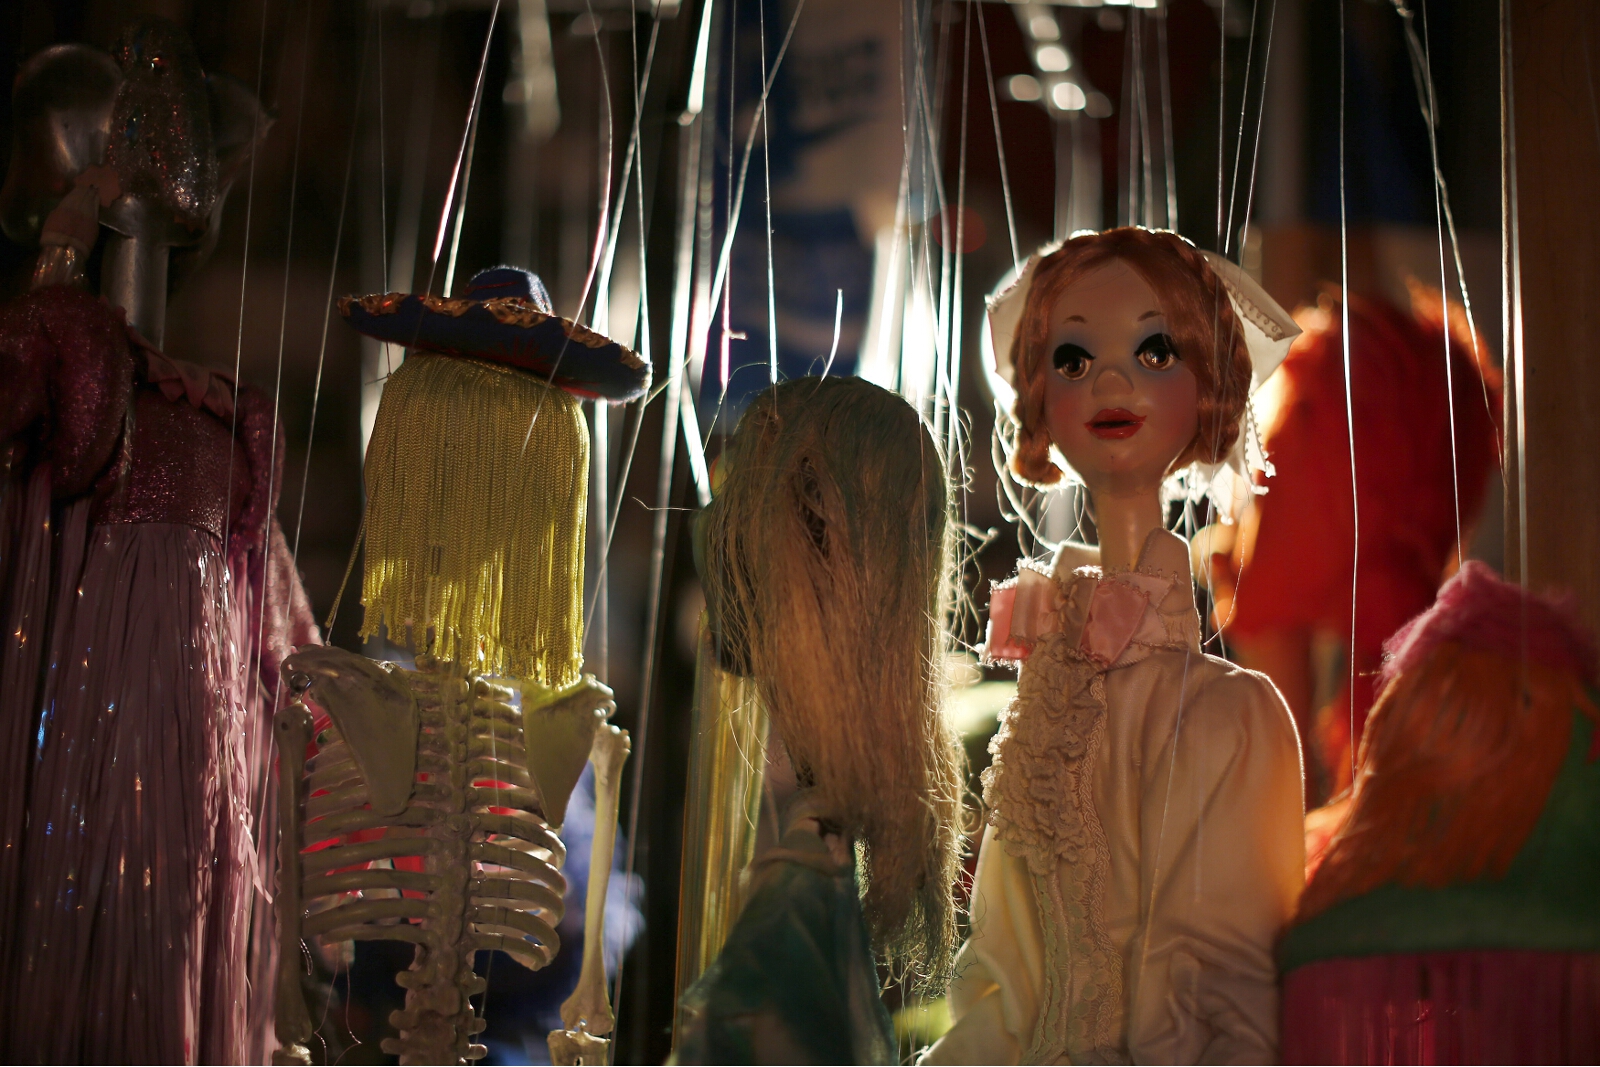 marionette-theater-closure-09